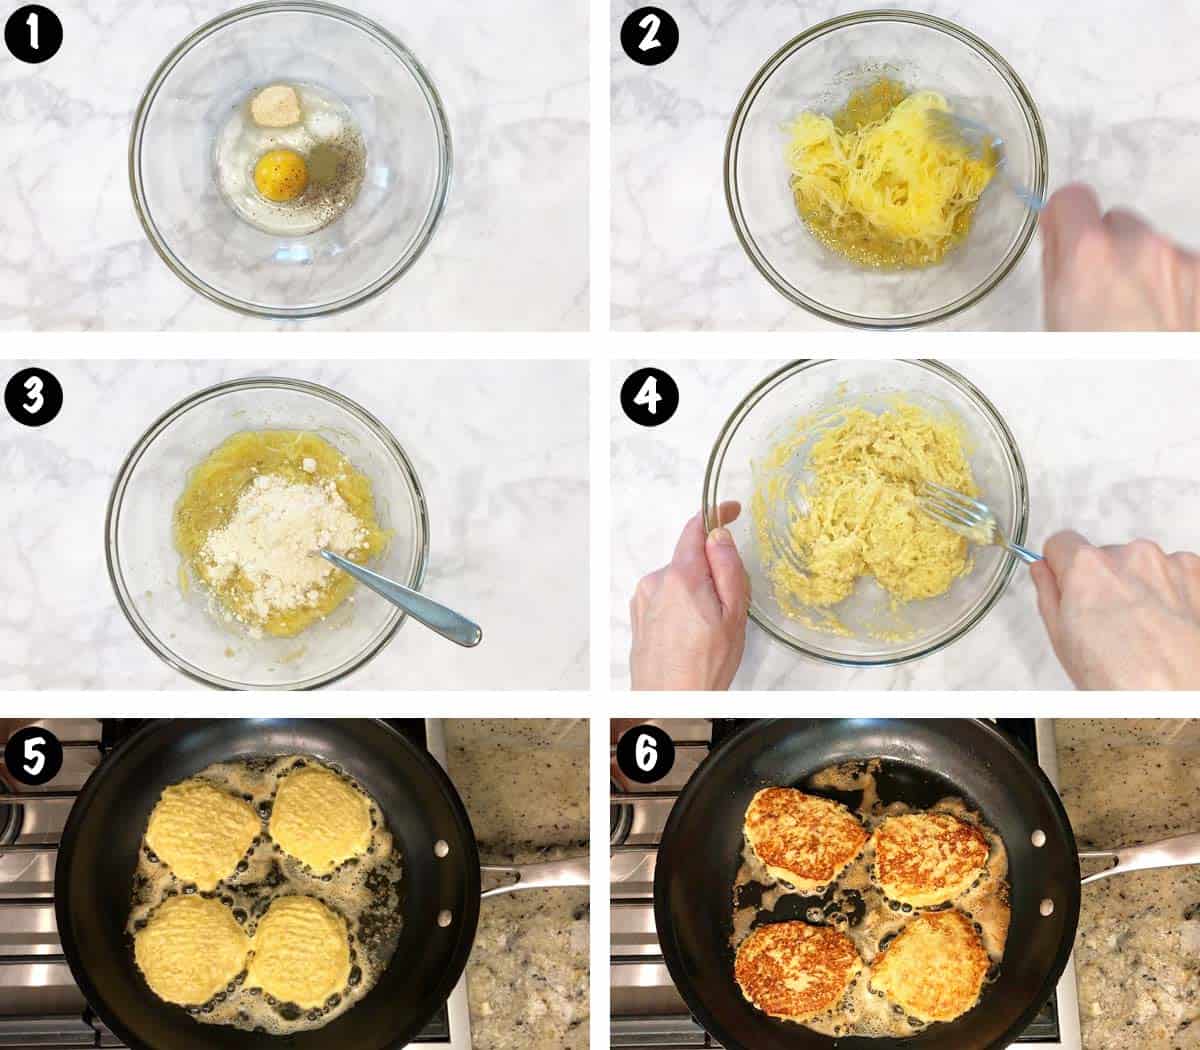 Un collage de seis fotos que muestra los pasos para hacer buñuelos de calabaza espagueti.